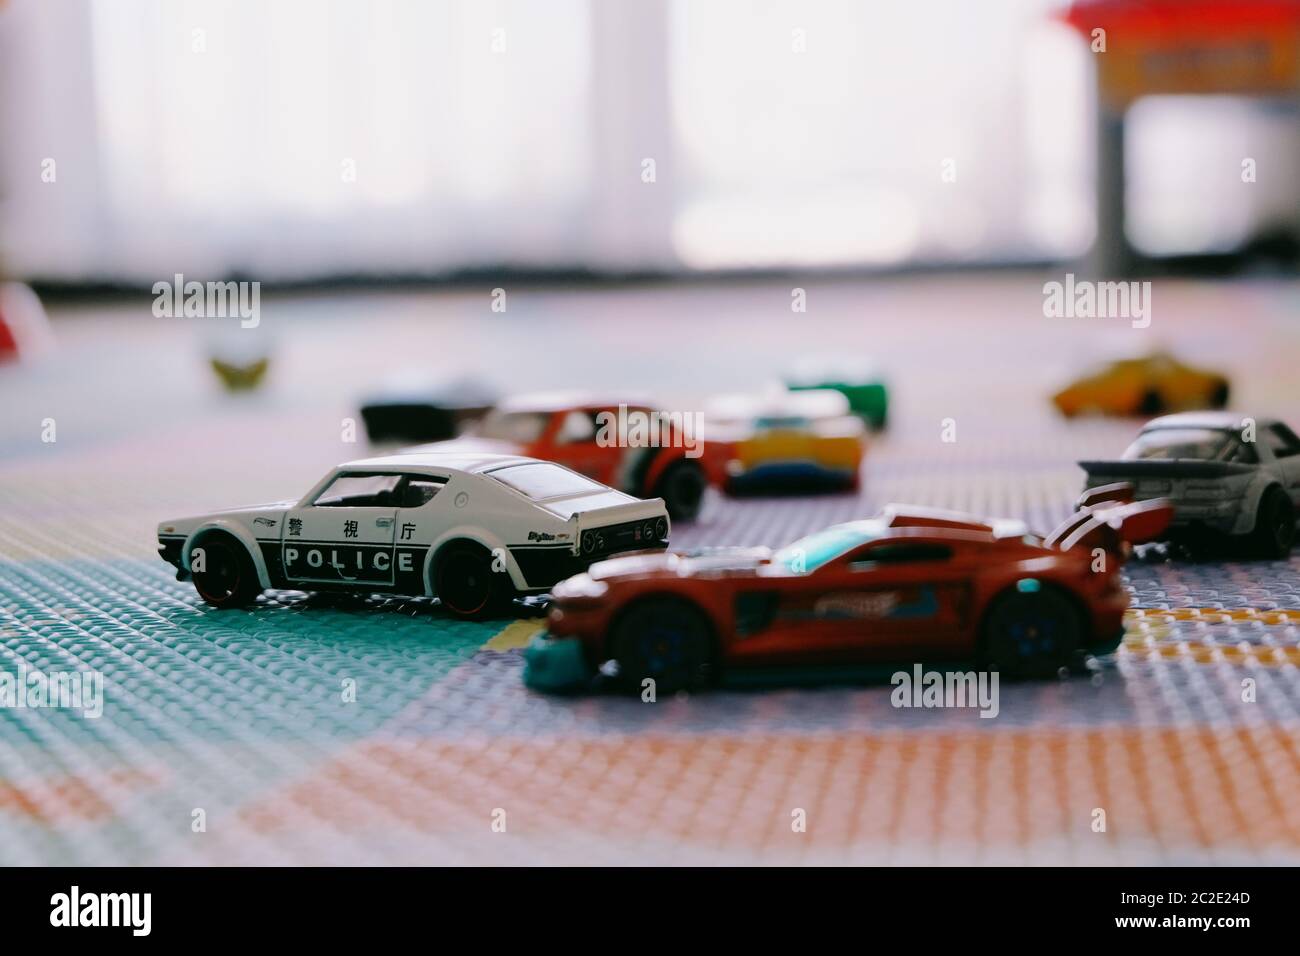 Kleine bunte Spielzeug Hot Wheels Autos von Mattel in Kinderzimmer Spielmatte Stockfoto